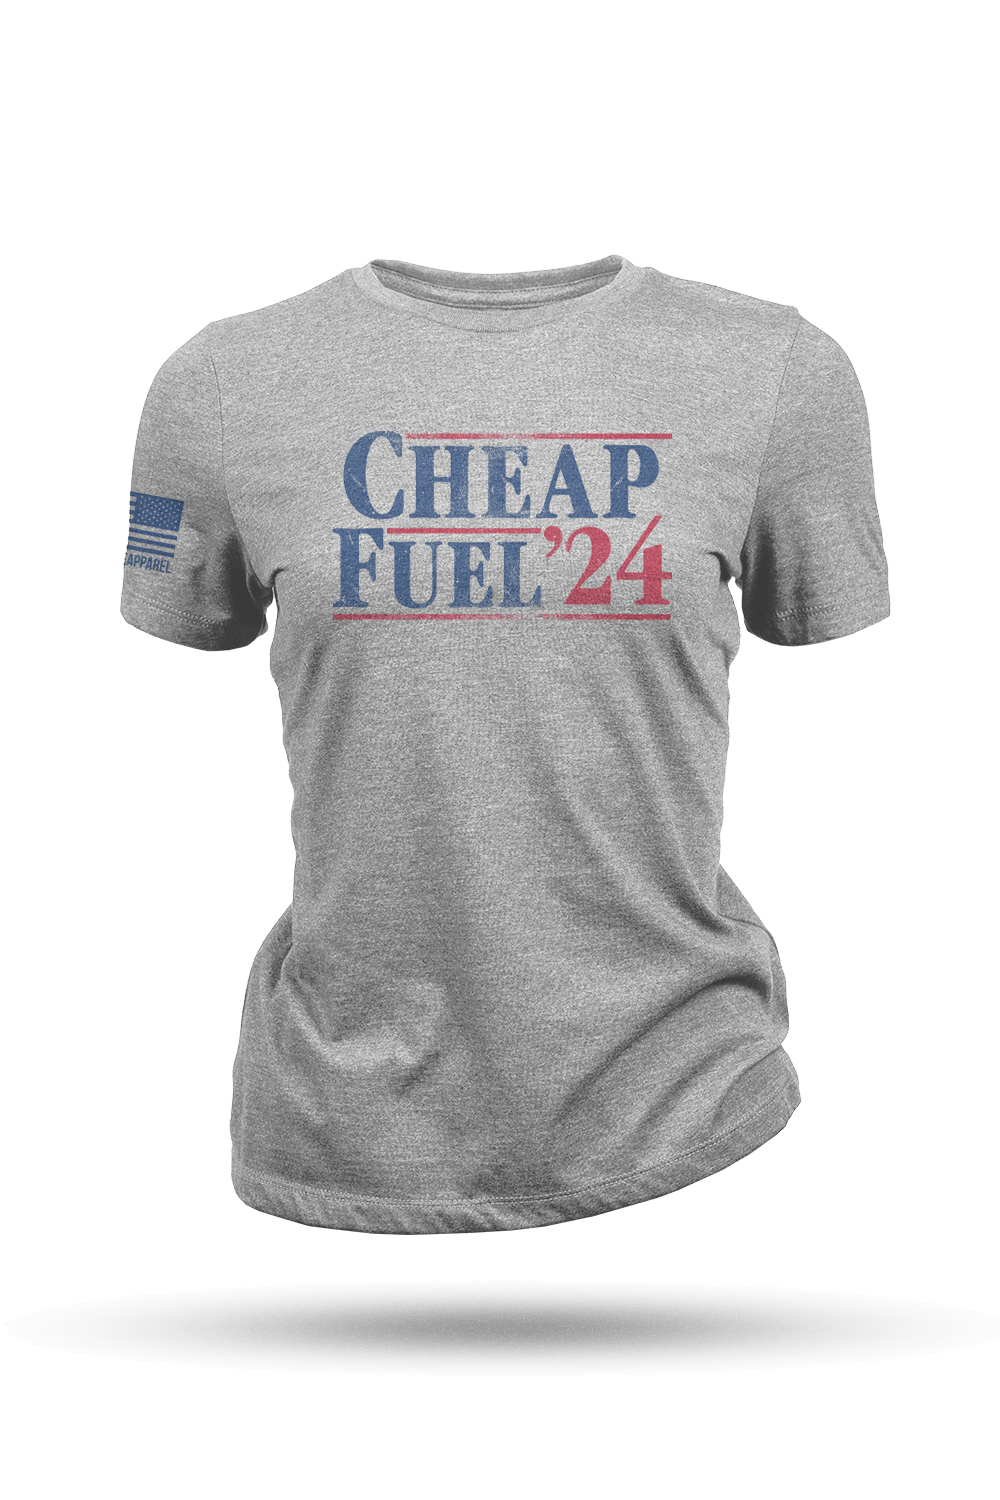 Women's T - Shirt - Cheap Fuel '24